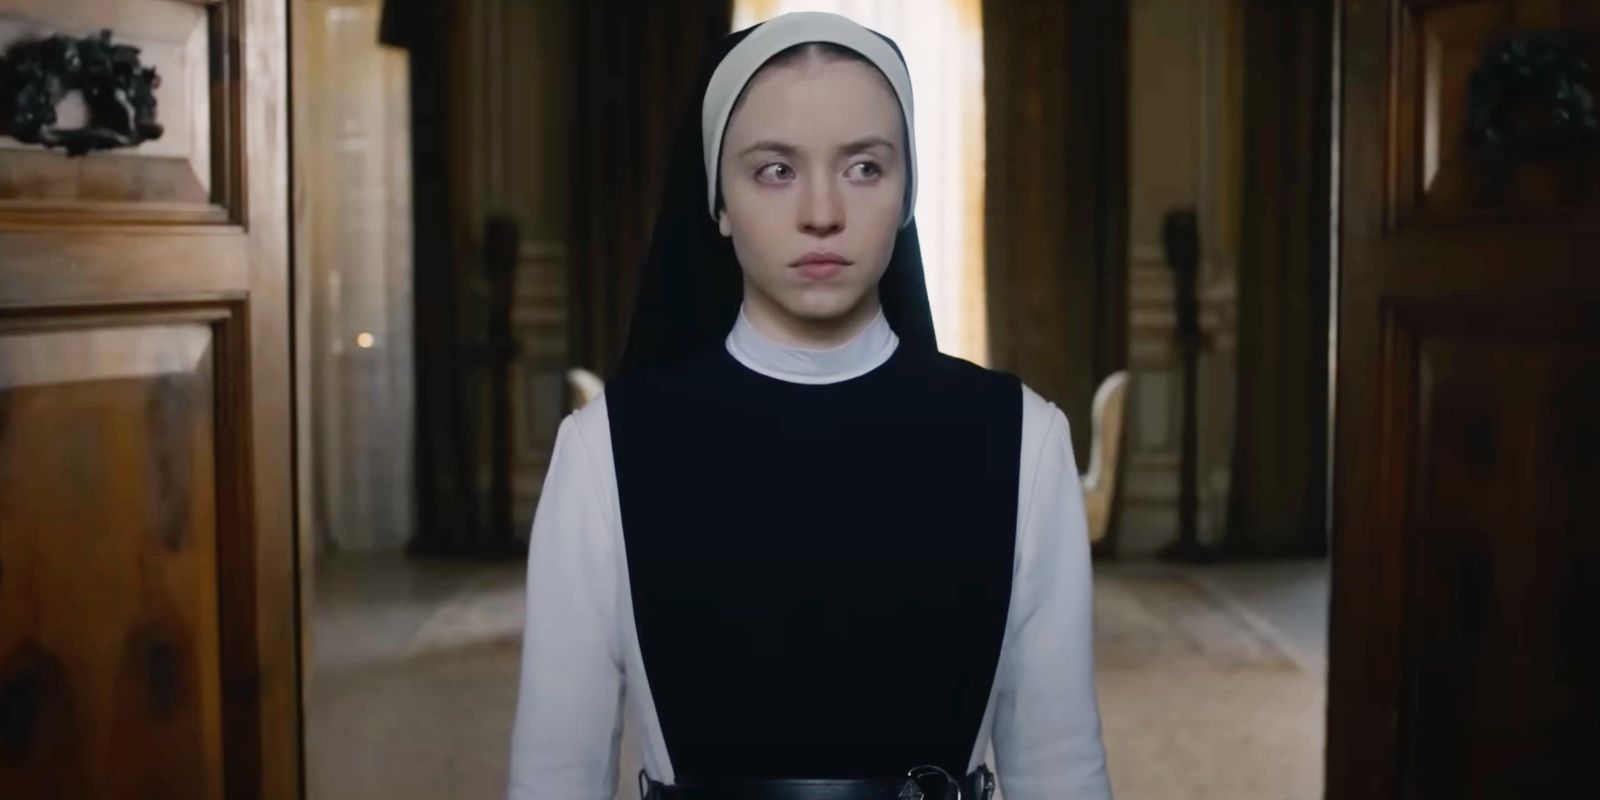 Primeras reacciones inmaculadas: película de terror de Sydney Sweeney elogiada por su terror religioso “sangriento y desquiciado”